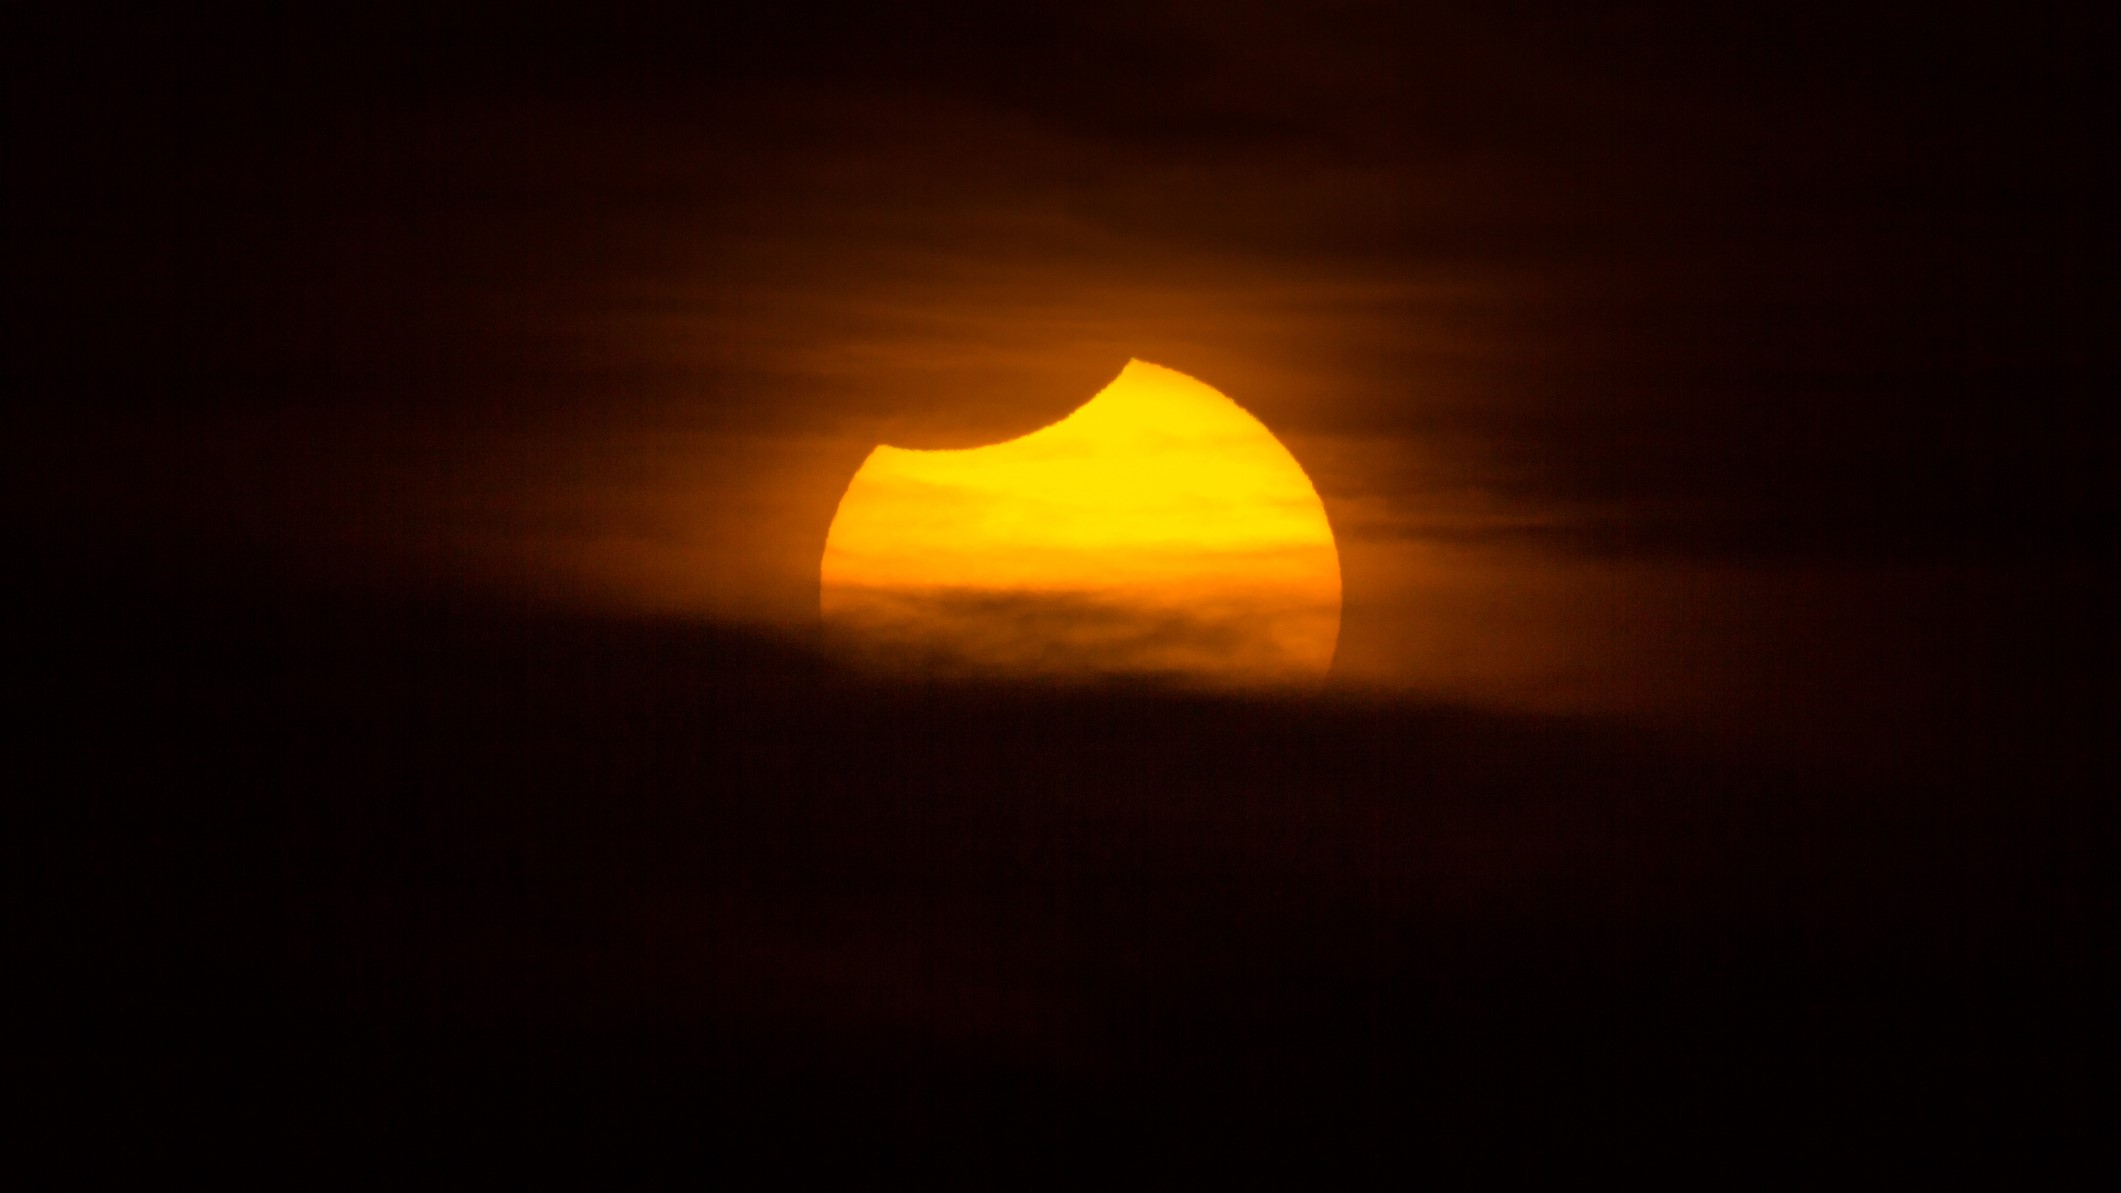 خورشید گرفتگی در مونته ویدئو، اروگوئه مشاهده شد.  عکس در فضای باز گرفته شده است و هیچ فردی در عکس وجود ندارد.  در همان زمان، خورشید در بالای افق، بر فراز ریودولا پلاتا غروب می کند.